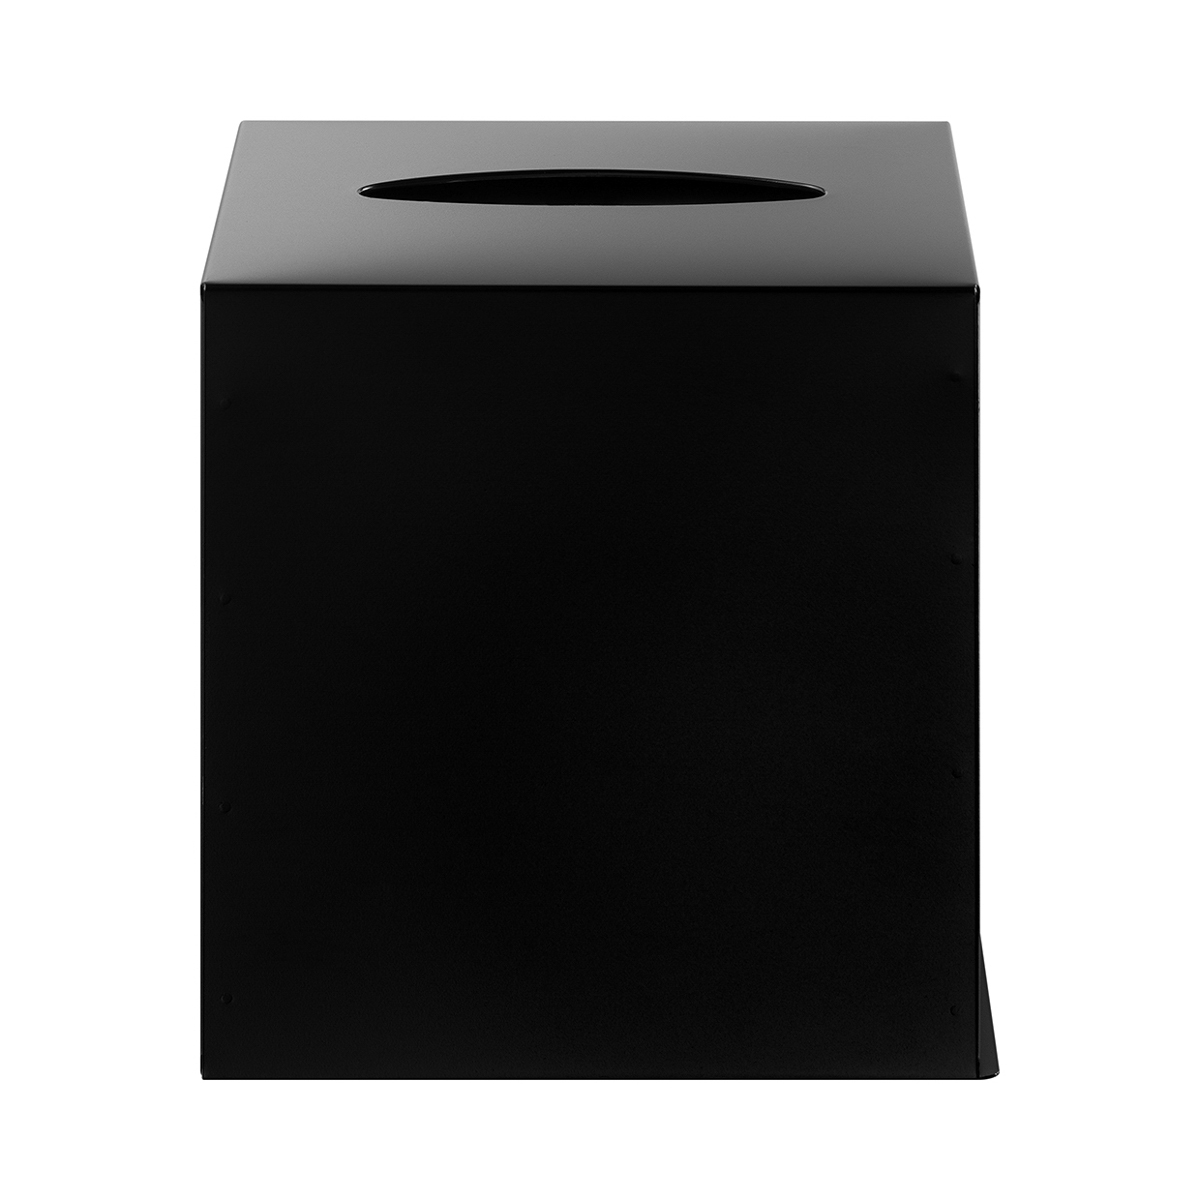 Kosmetiktücherbox -NEXIO- Edelstahl schwarz. Material: Edelstahl. Von Blomus.